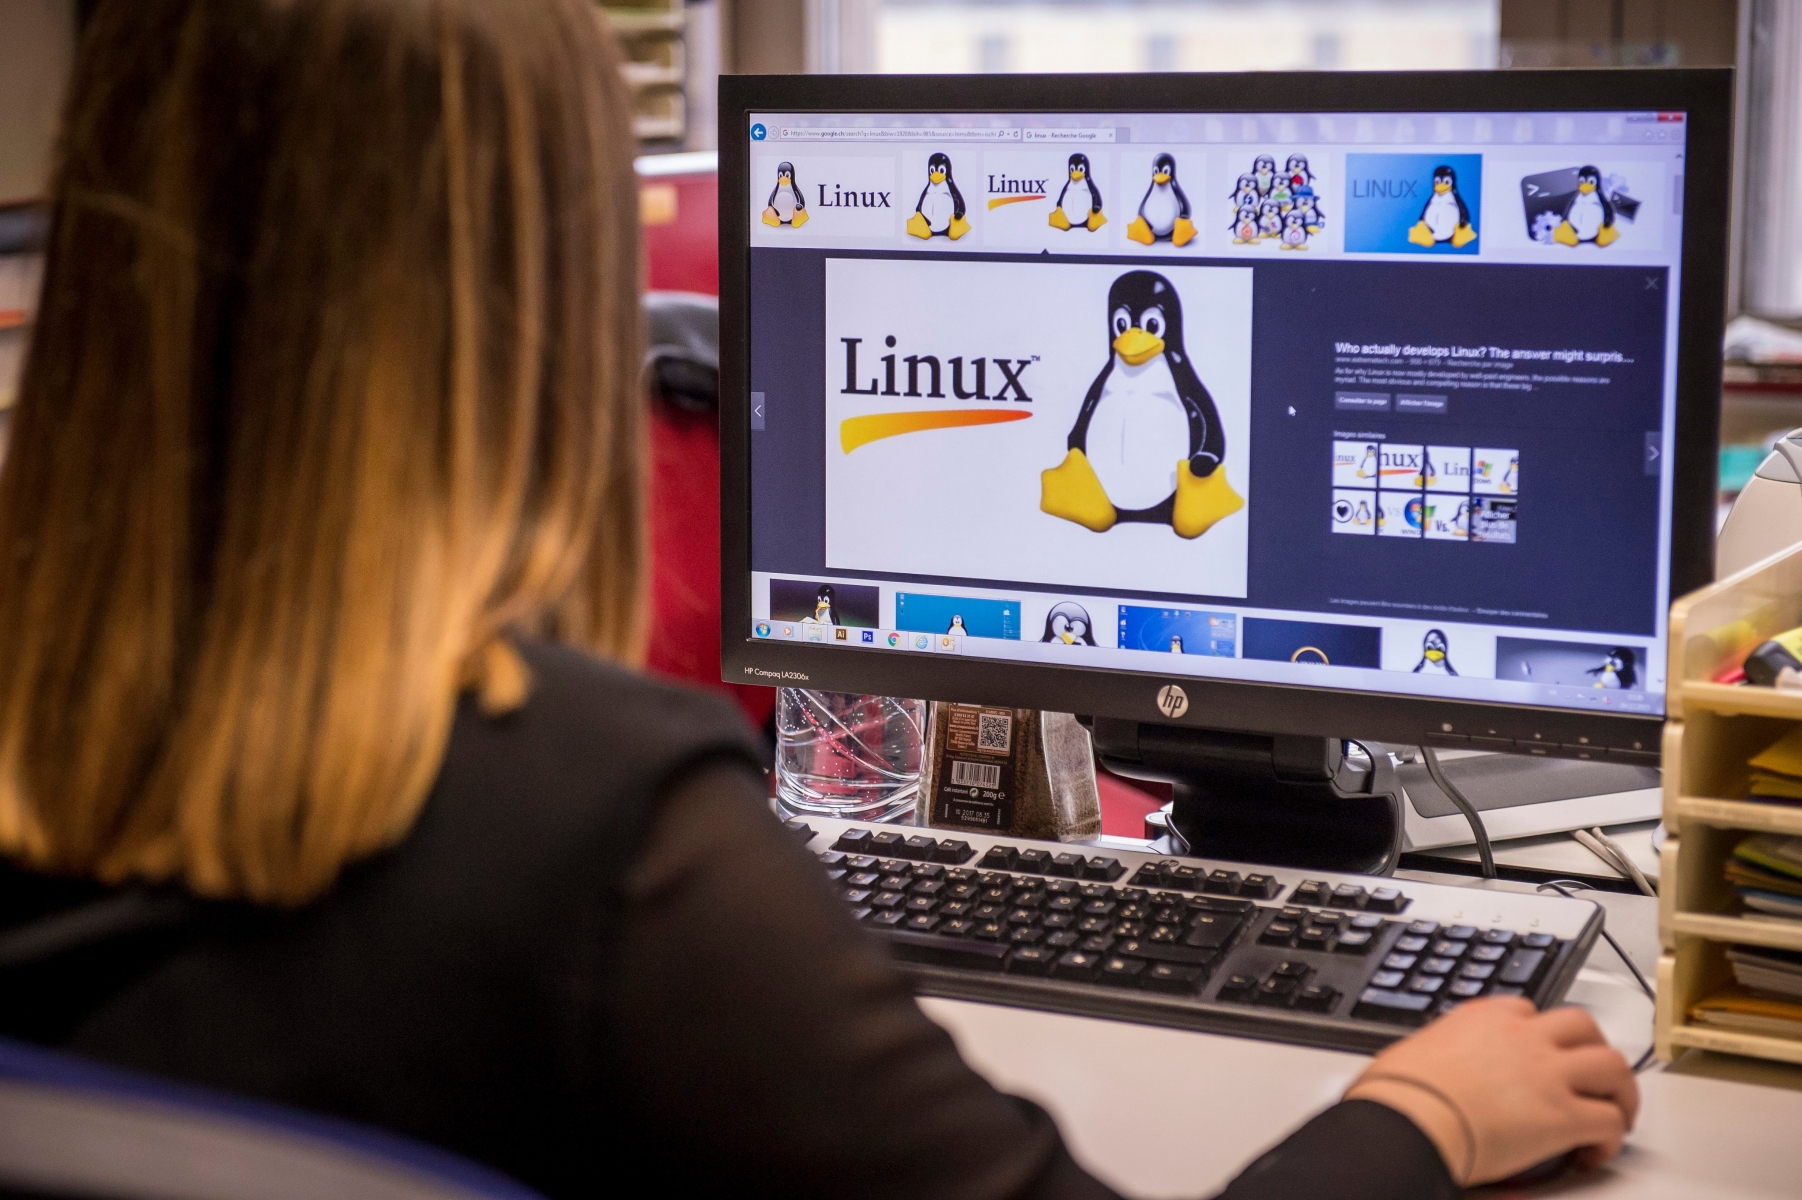 Image d'illustration sur les logiciels libres comme Linux



Neuchatel, le 24.12.2015



Photo : Lucas Vuitel